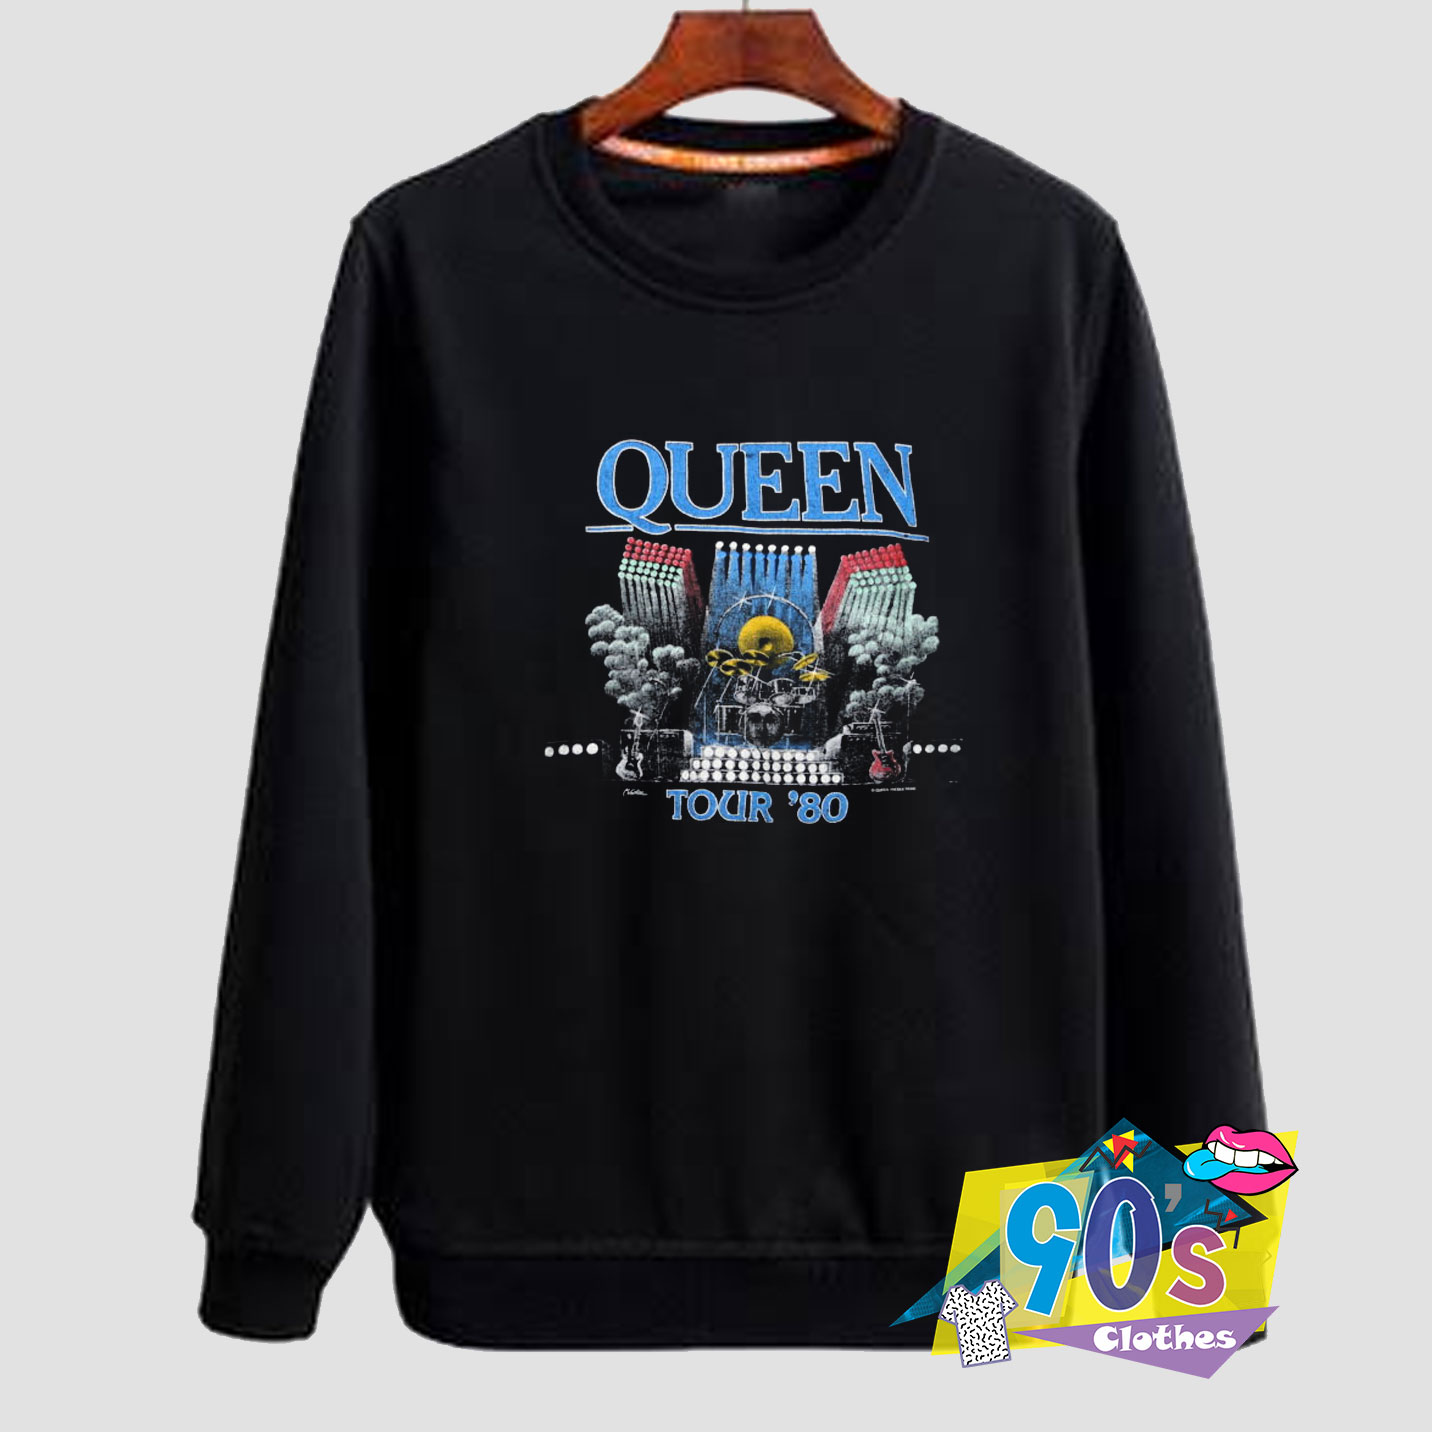 Cheap Queen  Tour 80 Sweatshirt  On Sale 90sclothes com